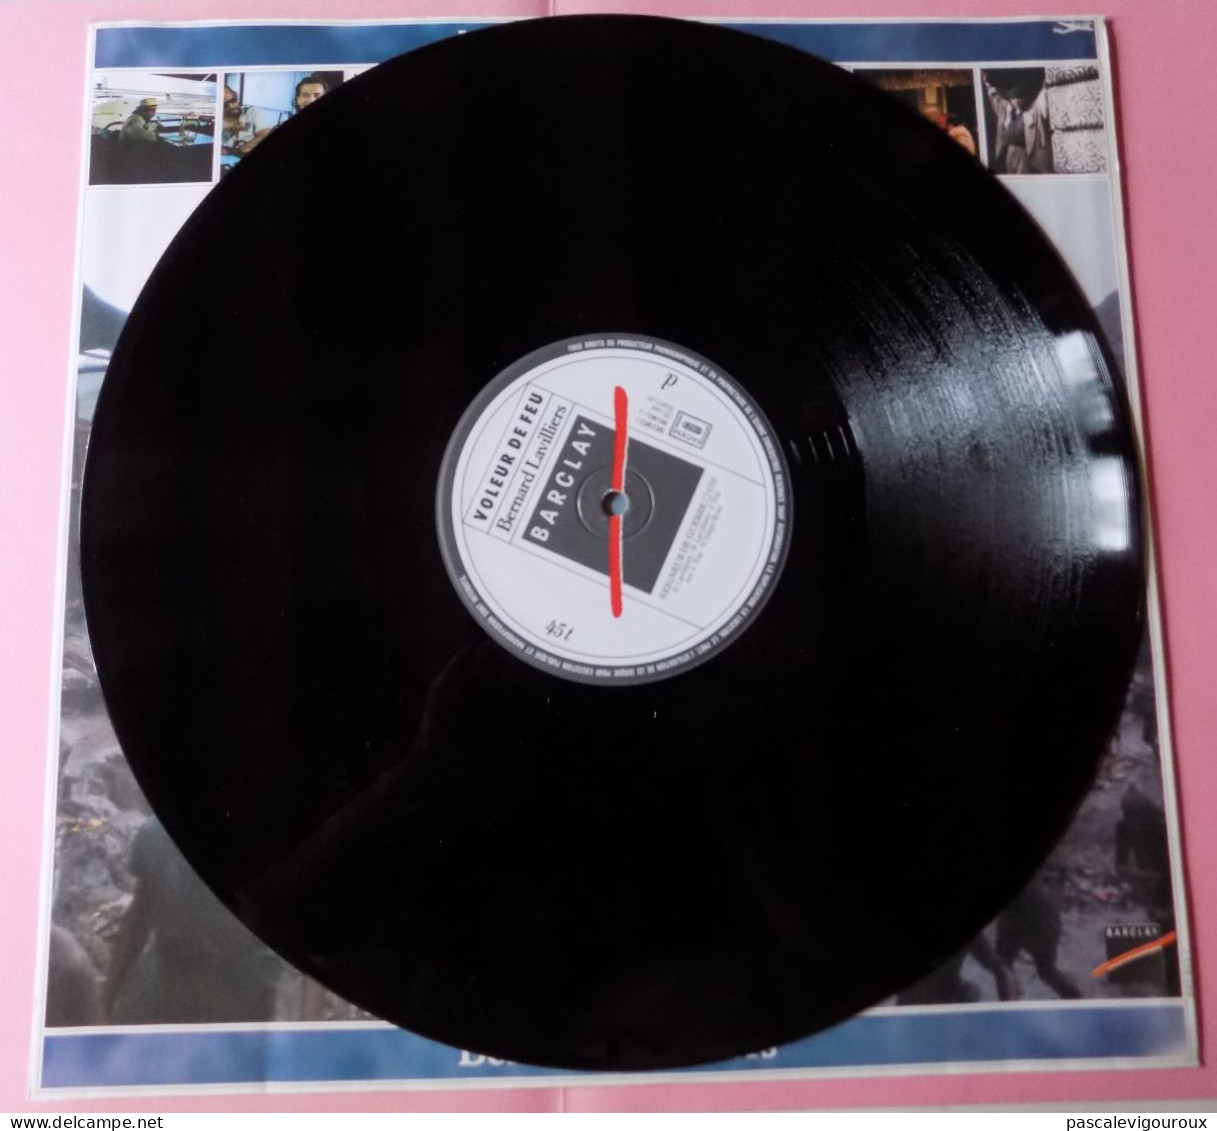 BERNARD LAVILLIERS VOLEUR DE FEU DOUBLE 33T LP 1986 BARCLAY 829.341/1 2 disques